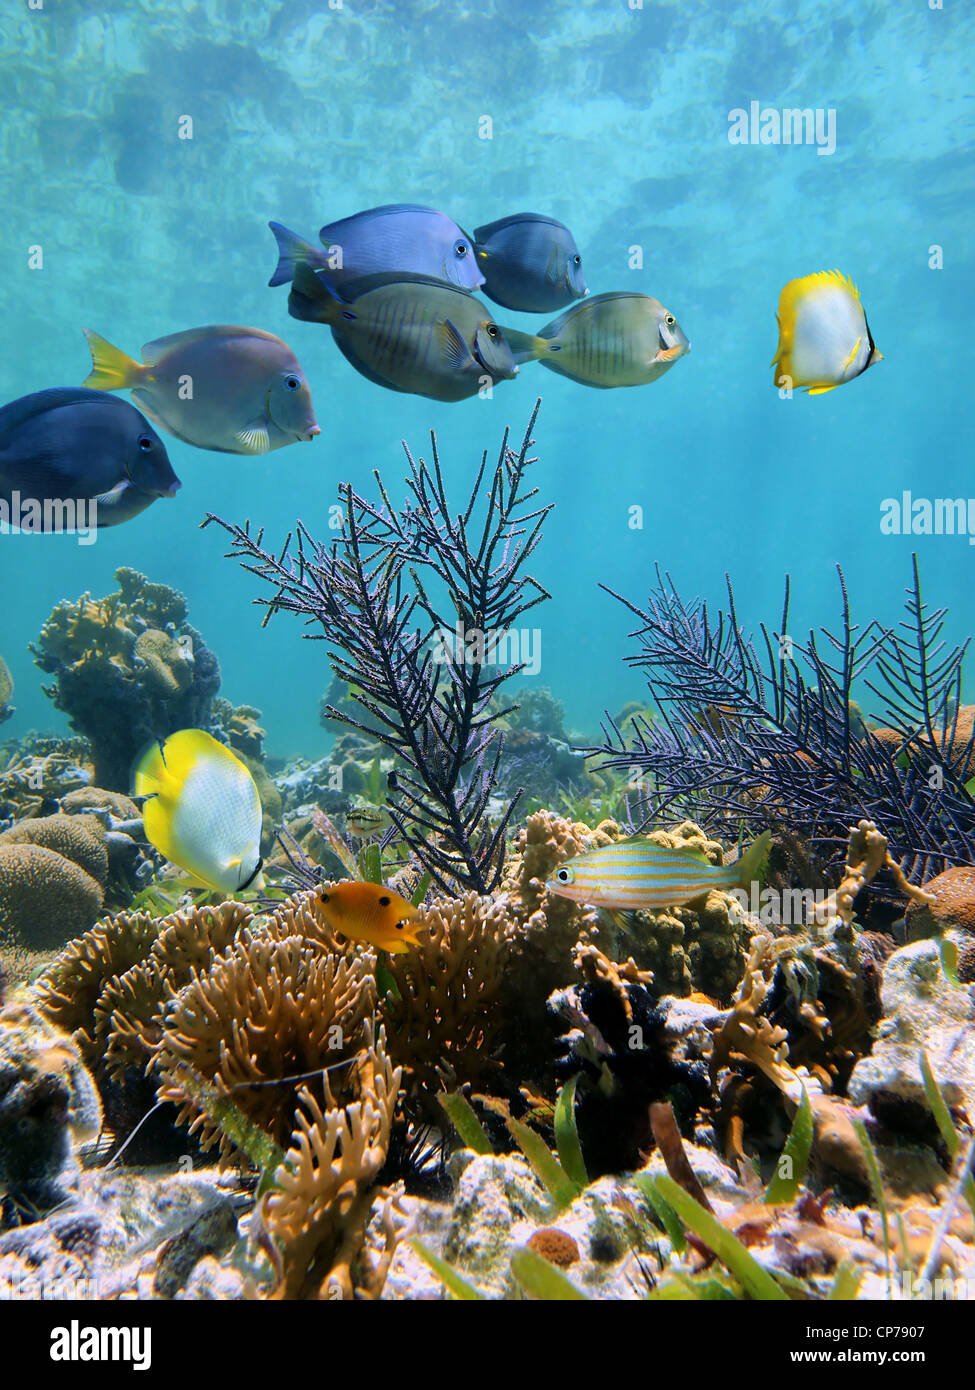 Arrecifes de coral submarinos con peces tropicales en fondos marinos poco profundos, mar Caribe, México Foto de stock